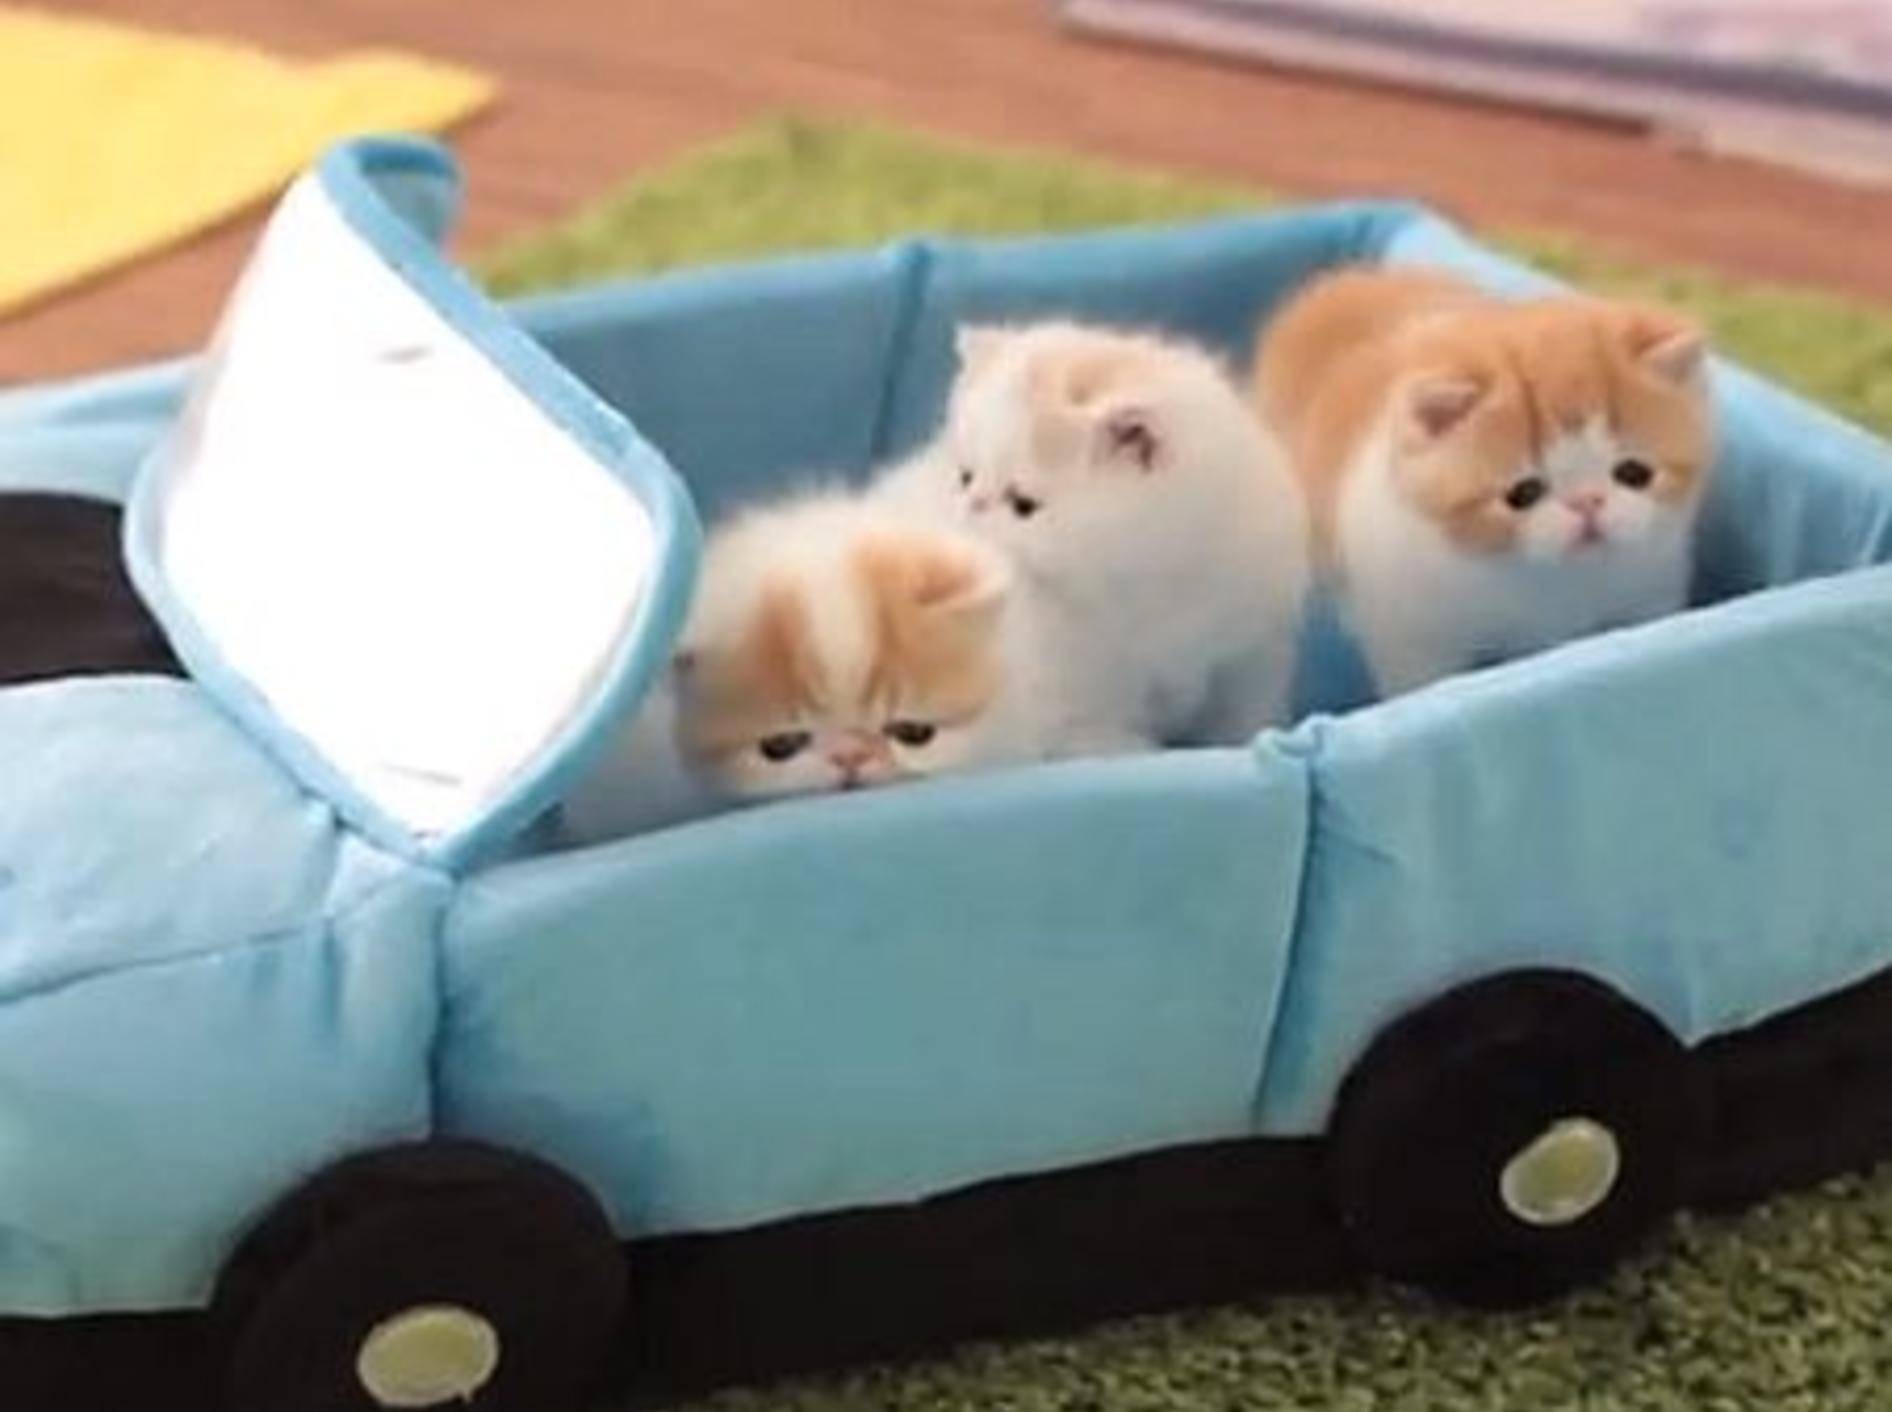 Exotische Kurzhaar Katzenbabys fahren Auto — Bild: Youtube / sweetfurx4